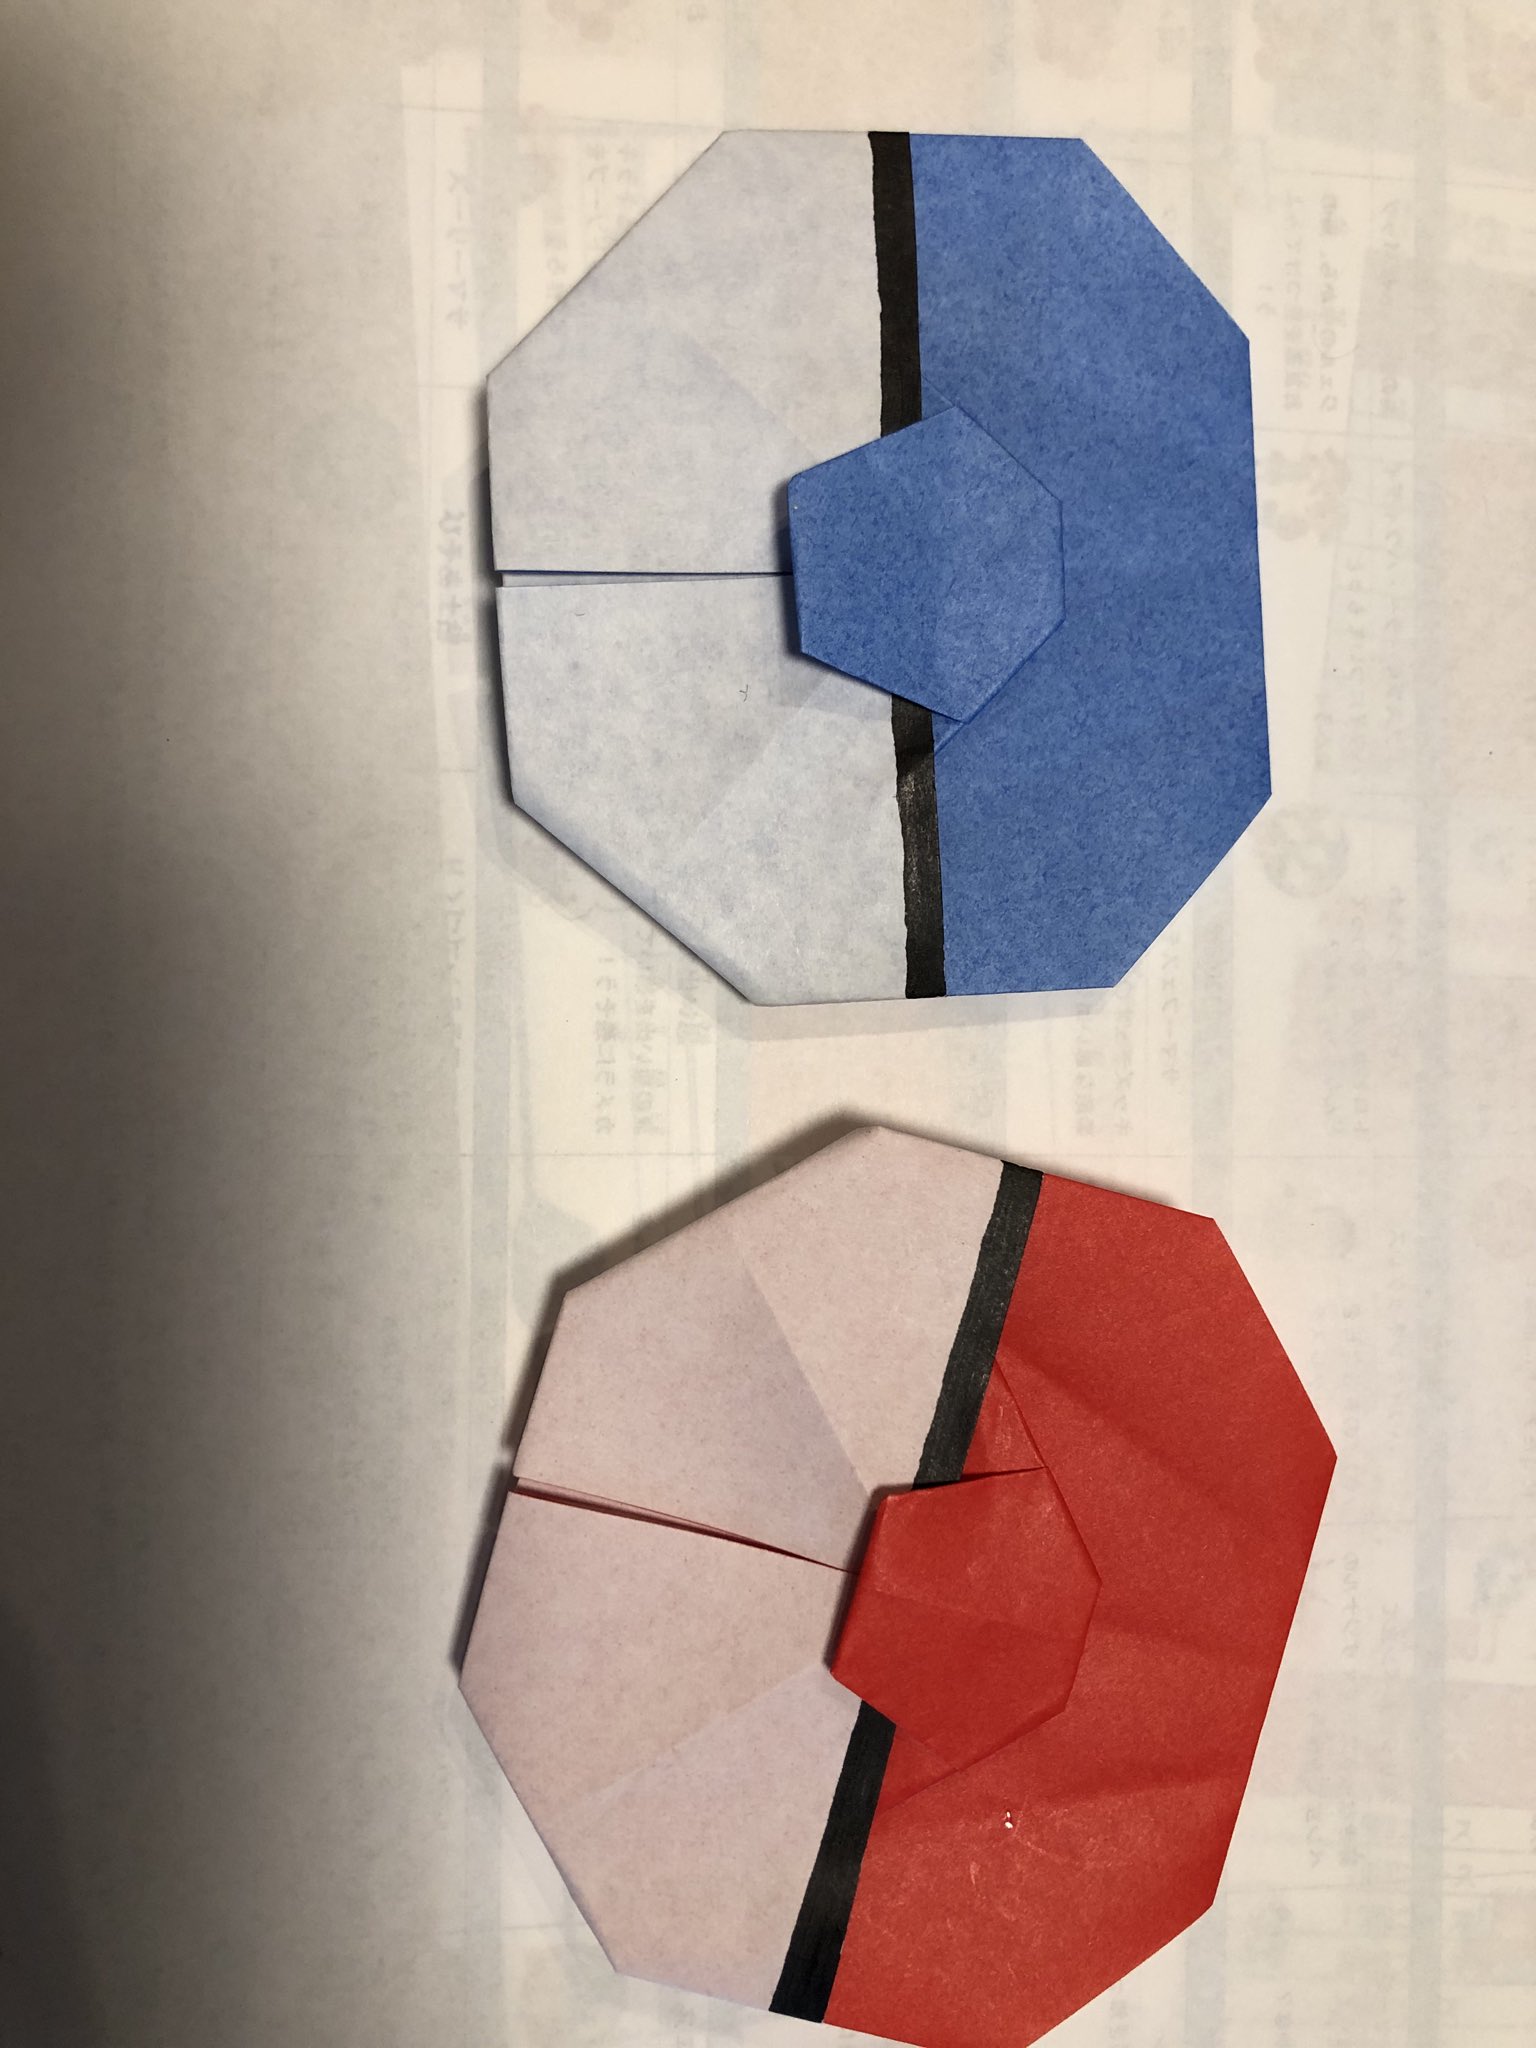 Naopon Youtubeでモンスターボールの折り方あげてくれてる人がいて作ってみた 折り紙モンスターボール可愛ぃ